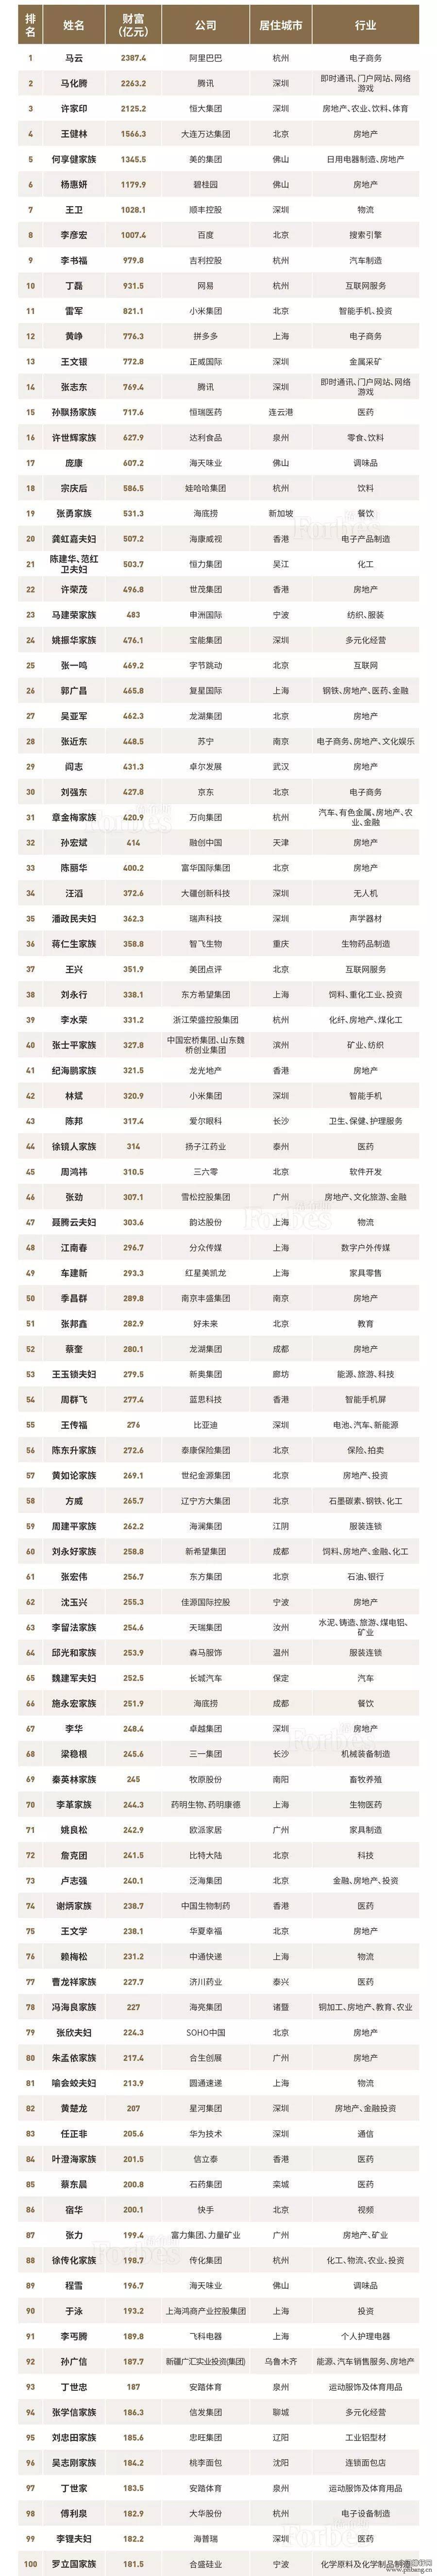 2018福布斯中国富豪榜TOP100排名